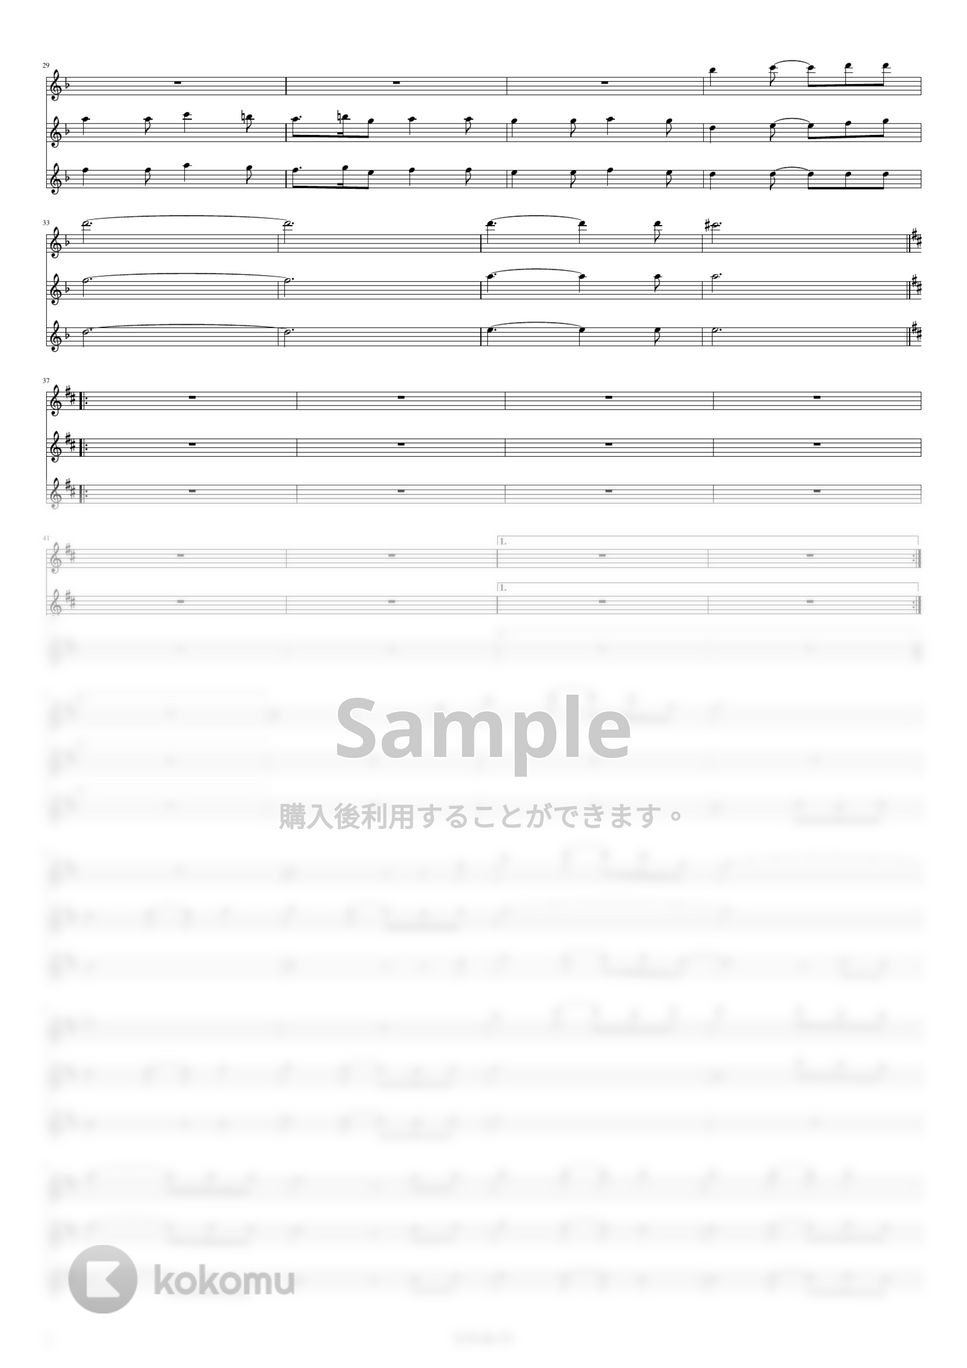 Kalafina - storia (フルート用メロディー譜(三声)) by もりたあいか